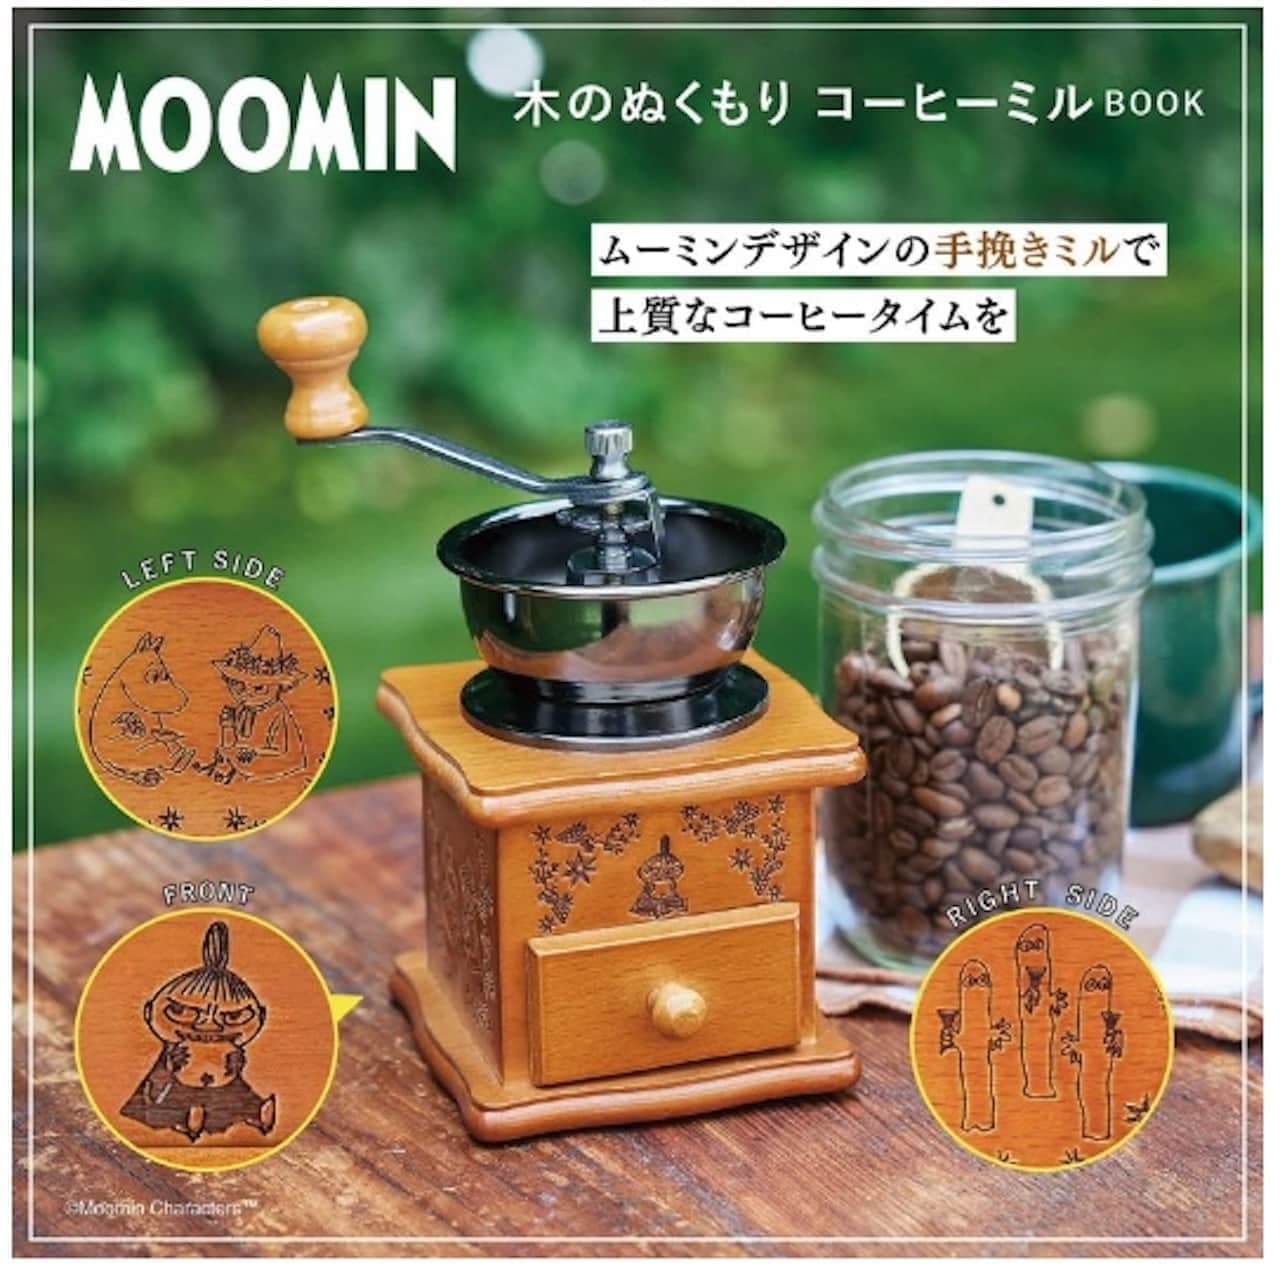 MOOMIN Wooden Warmth Coffee Mill Book Takarajimasya